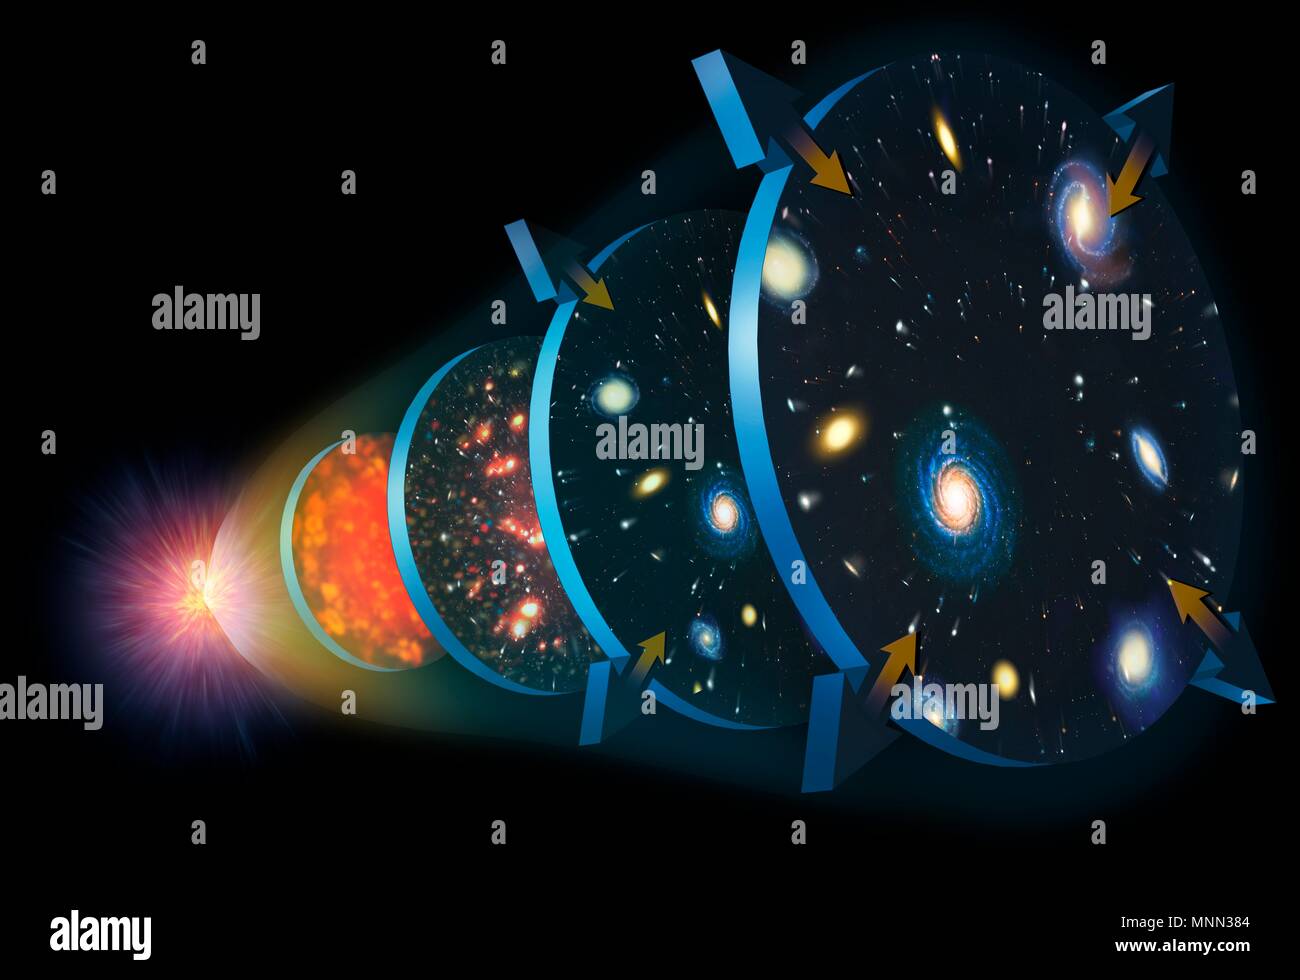 Illustration de l'expansion de l'Univers. Le Cosmos a commencé il y a 13,7 milliards d'années dans un événement appelé le Big Bang (à gauche). Immédiatement, il a commencé l'expansion et de refroidissement (stade 1). Finalement, l'univers est devenu transparent au rayonnement, et la première question a été en mesure de former en touffes. Son expansion a ralenti à environ 10 milliards d'années (stade 2). À l'étape 3, 5 milliards d'années, l'univers était plein d'étoiles et galaxies, et son expansion a commencé à accélérer à nouveau, à cause de la mystérieuse énergie sombre qui imprègne l'Univers. Banque D'Images